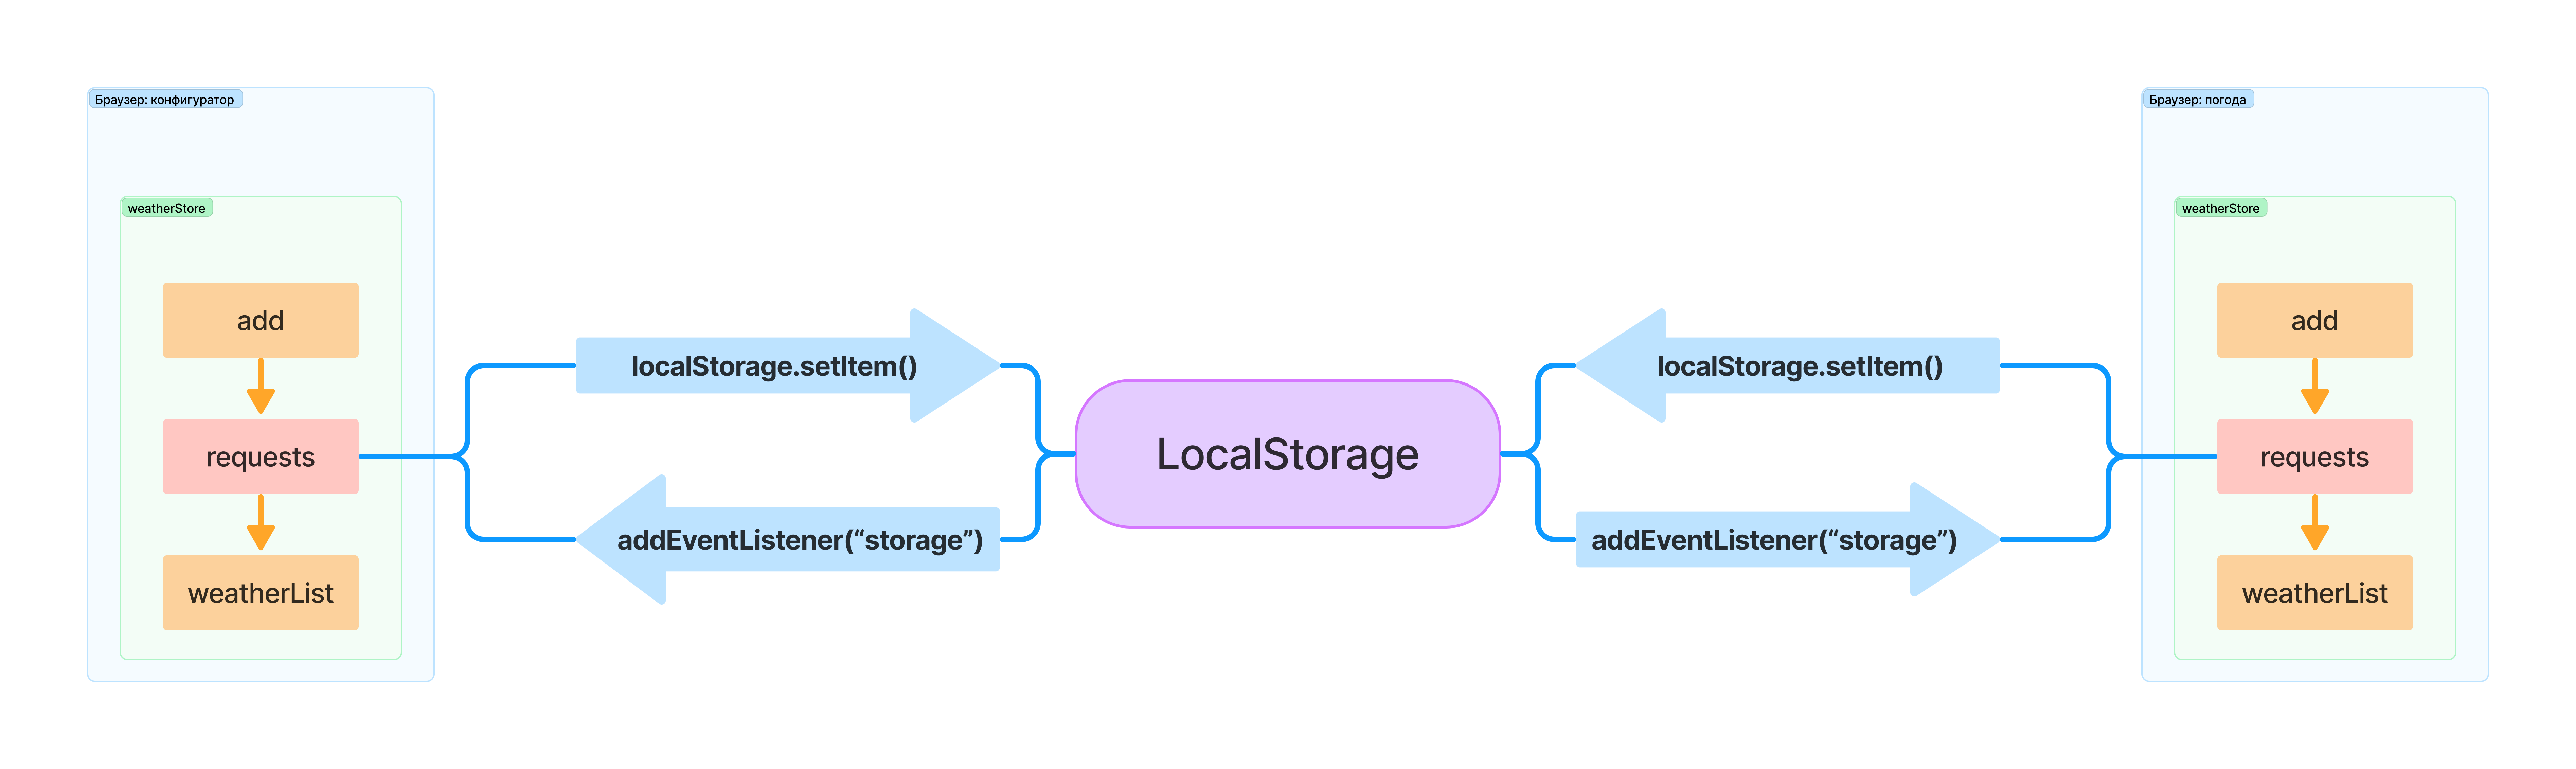 Схема взаимодействия экранов посредством LocalStorage